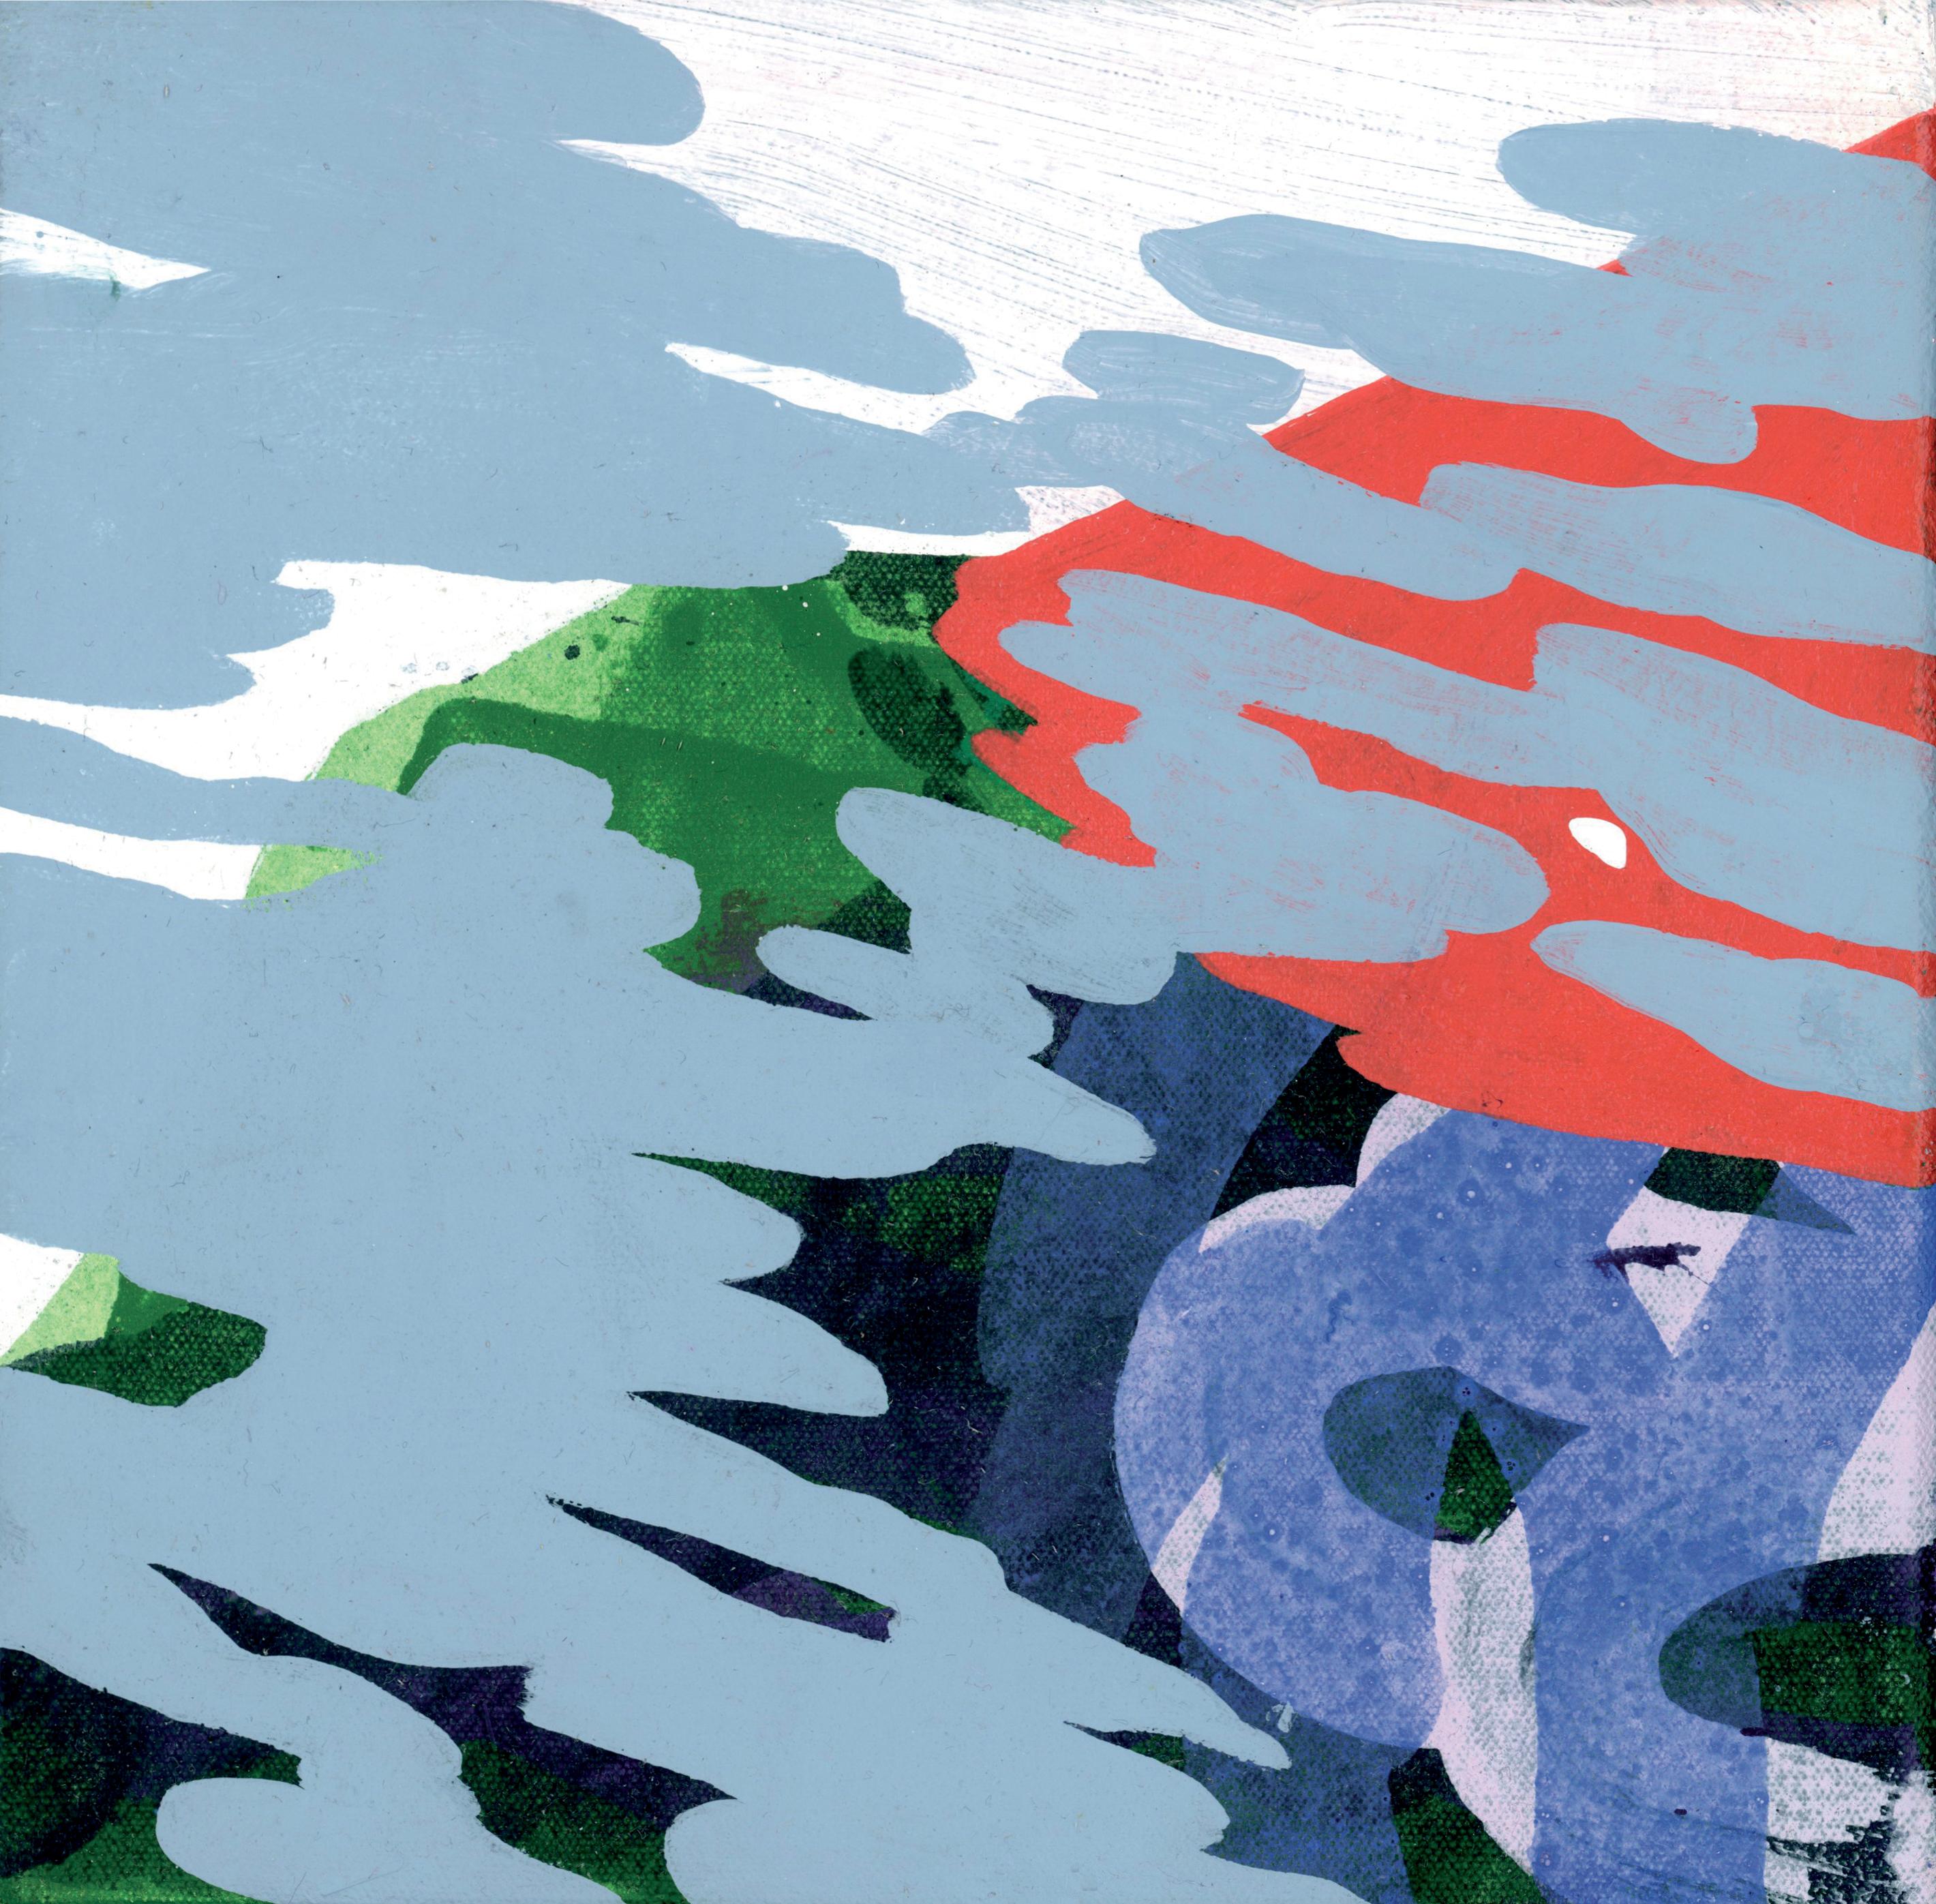 Sans titre 2 - Peinture moderne de paysage et de montagnes, abstraite, joyeuse, colorée